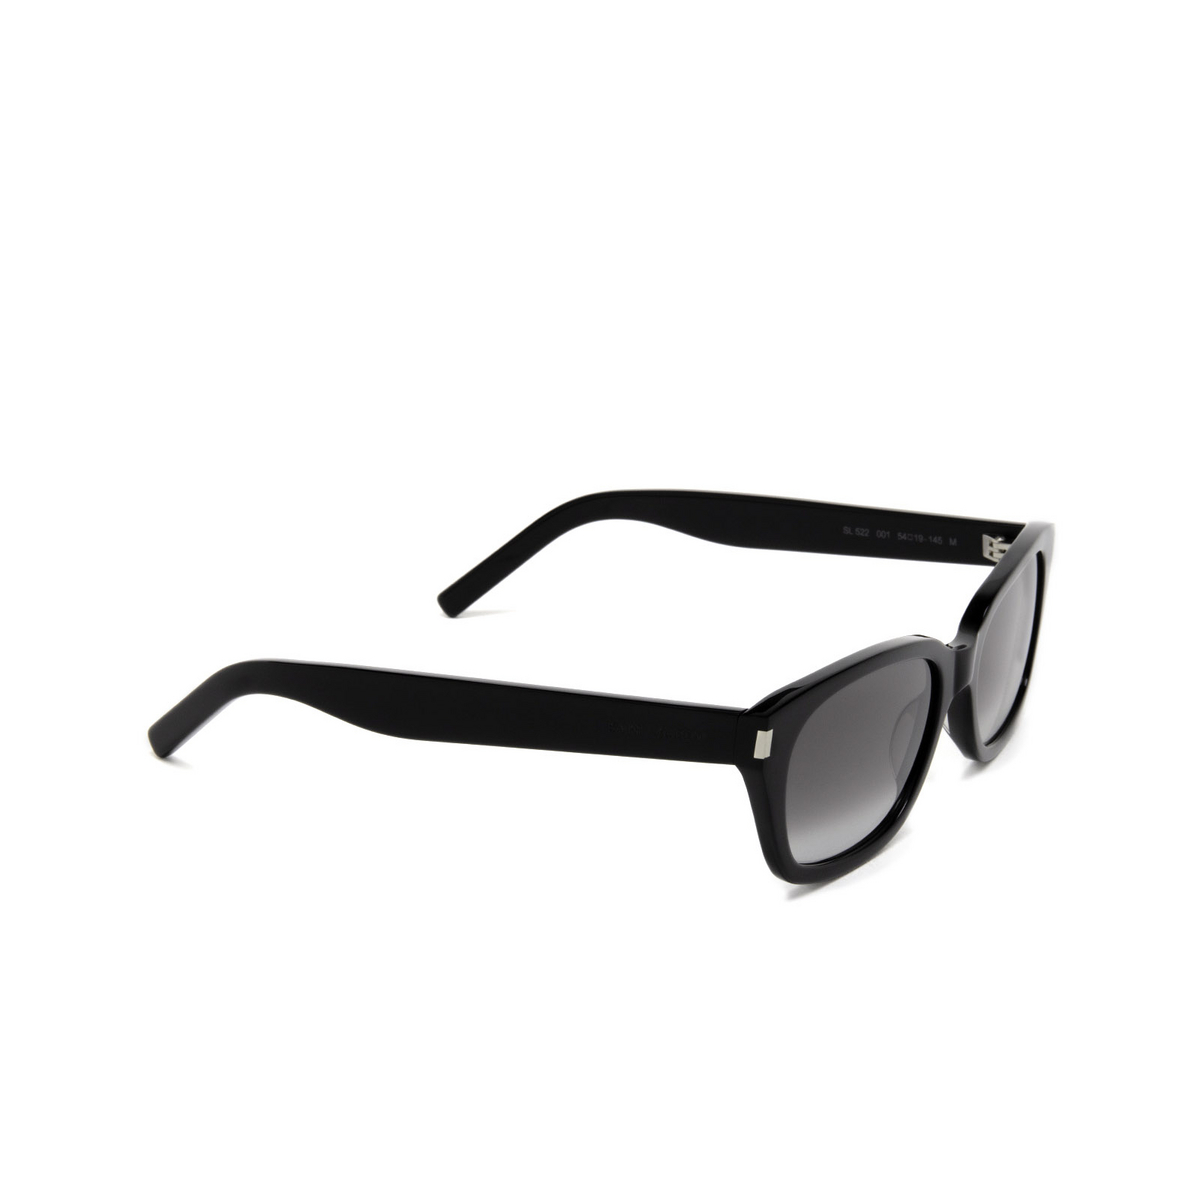 Saint Laurent® Rectangle Sunglasses: SL 522 color Black 001 - three-quarters view.